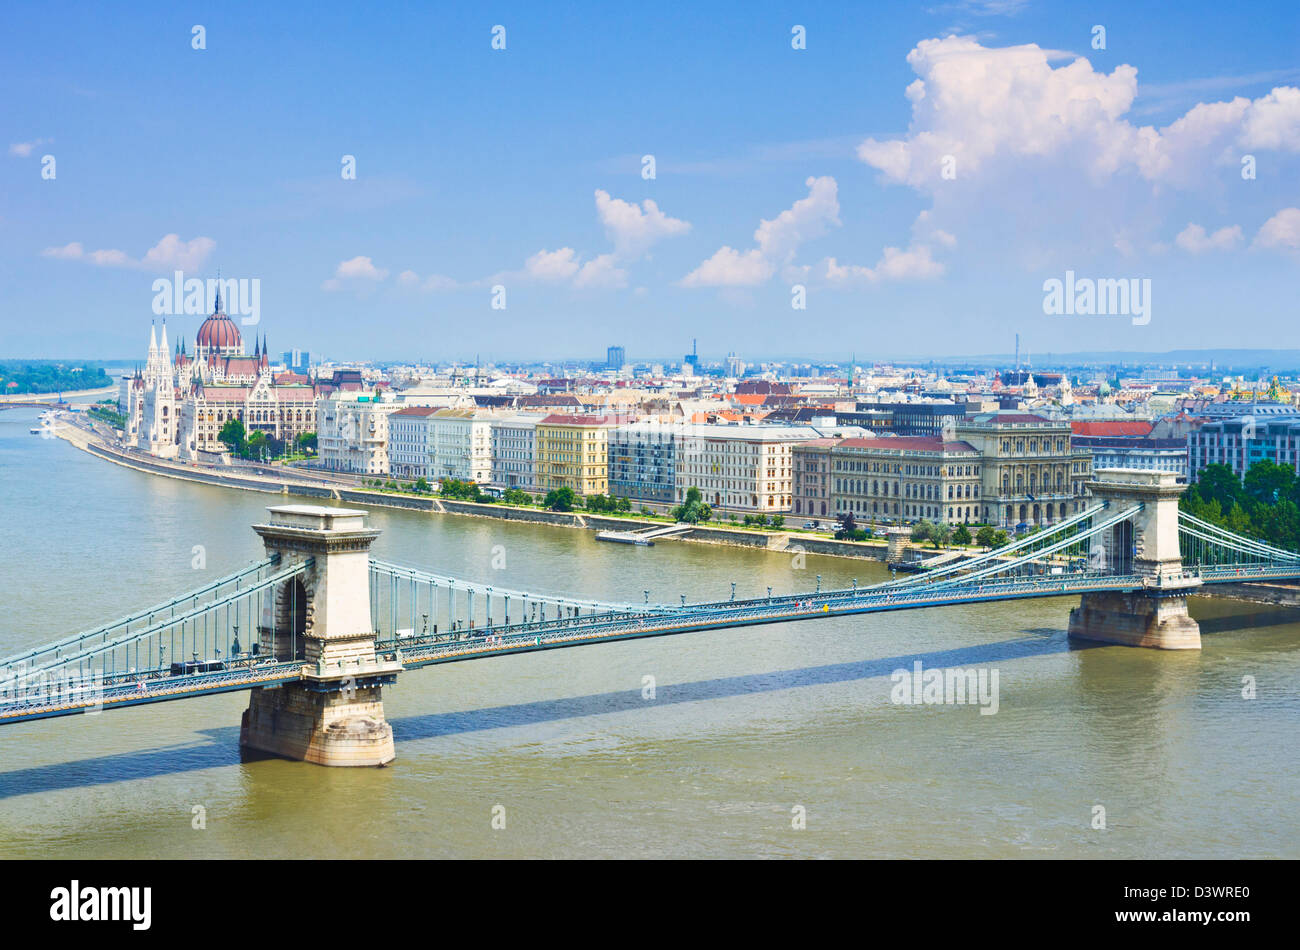 Edificio del Parlamento húngaro con el puente de cadena Szechenyi Lanchid sobre el río Danubio Budapest, Hungría Europa de la UE Foto de stock